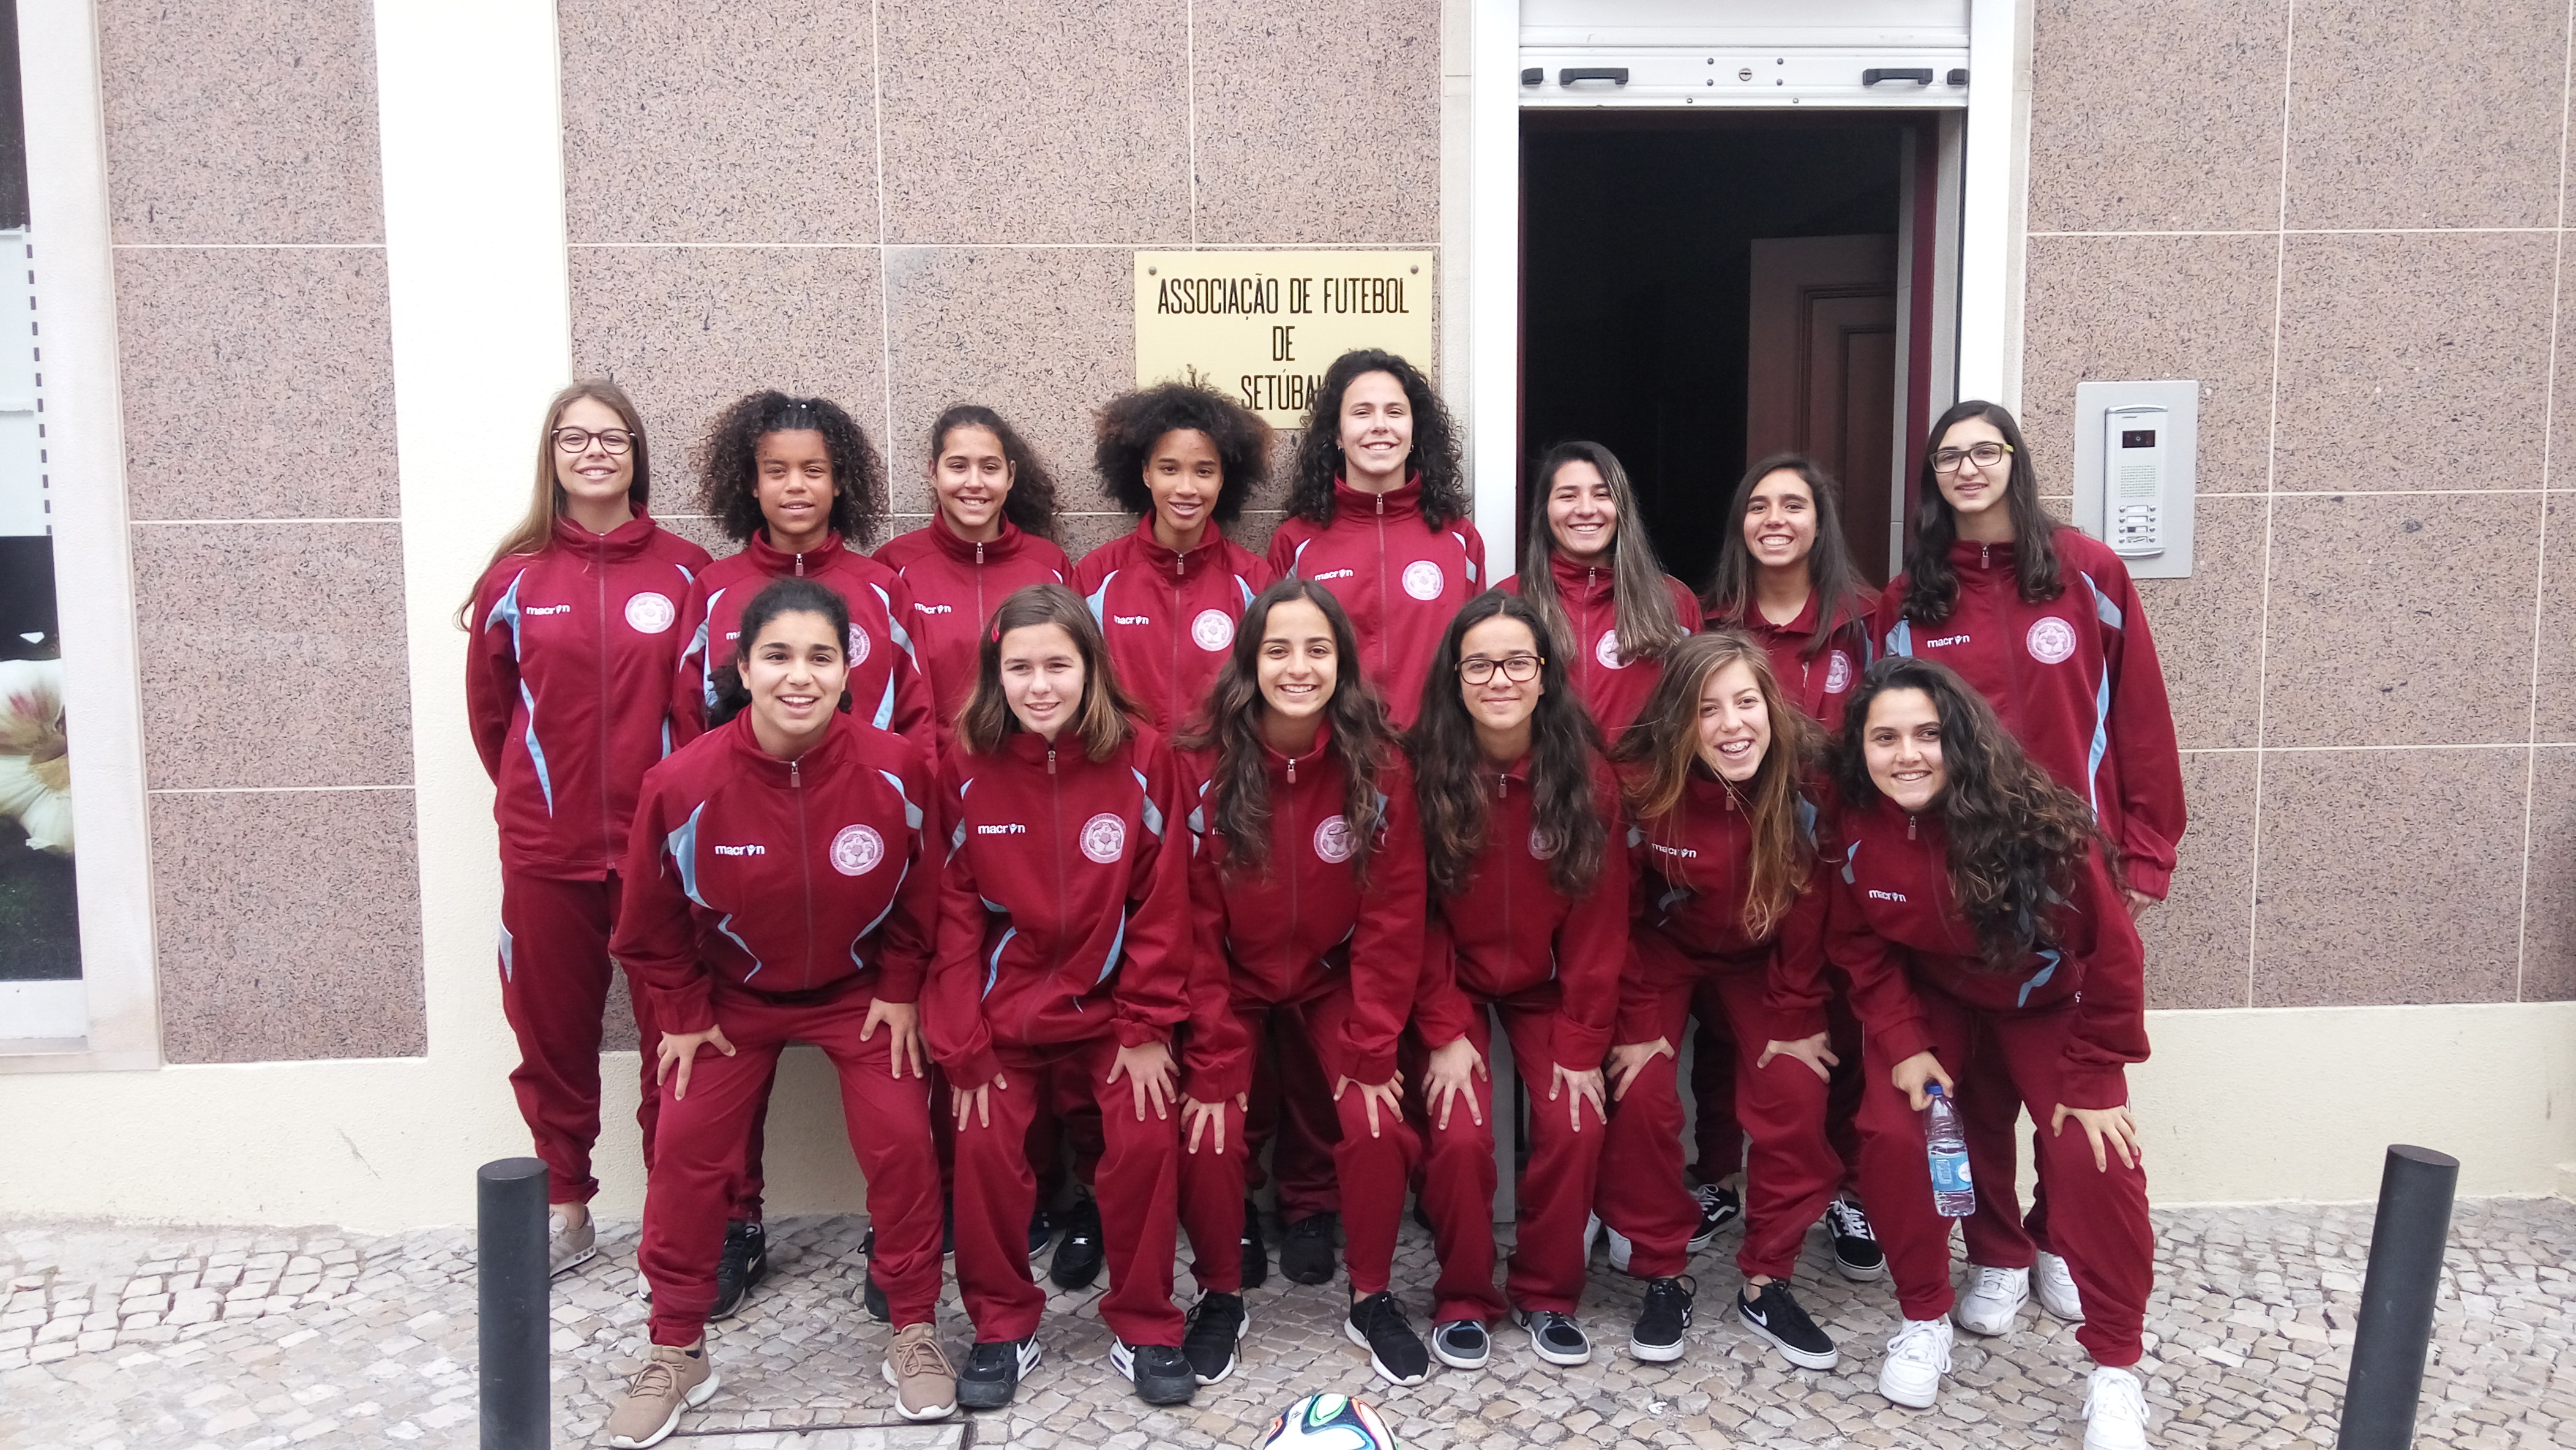 Qualidade, motivação e ambição para visar conquistas em nome do futebol feminino da AF Setúbal